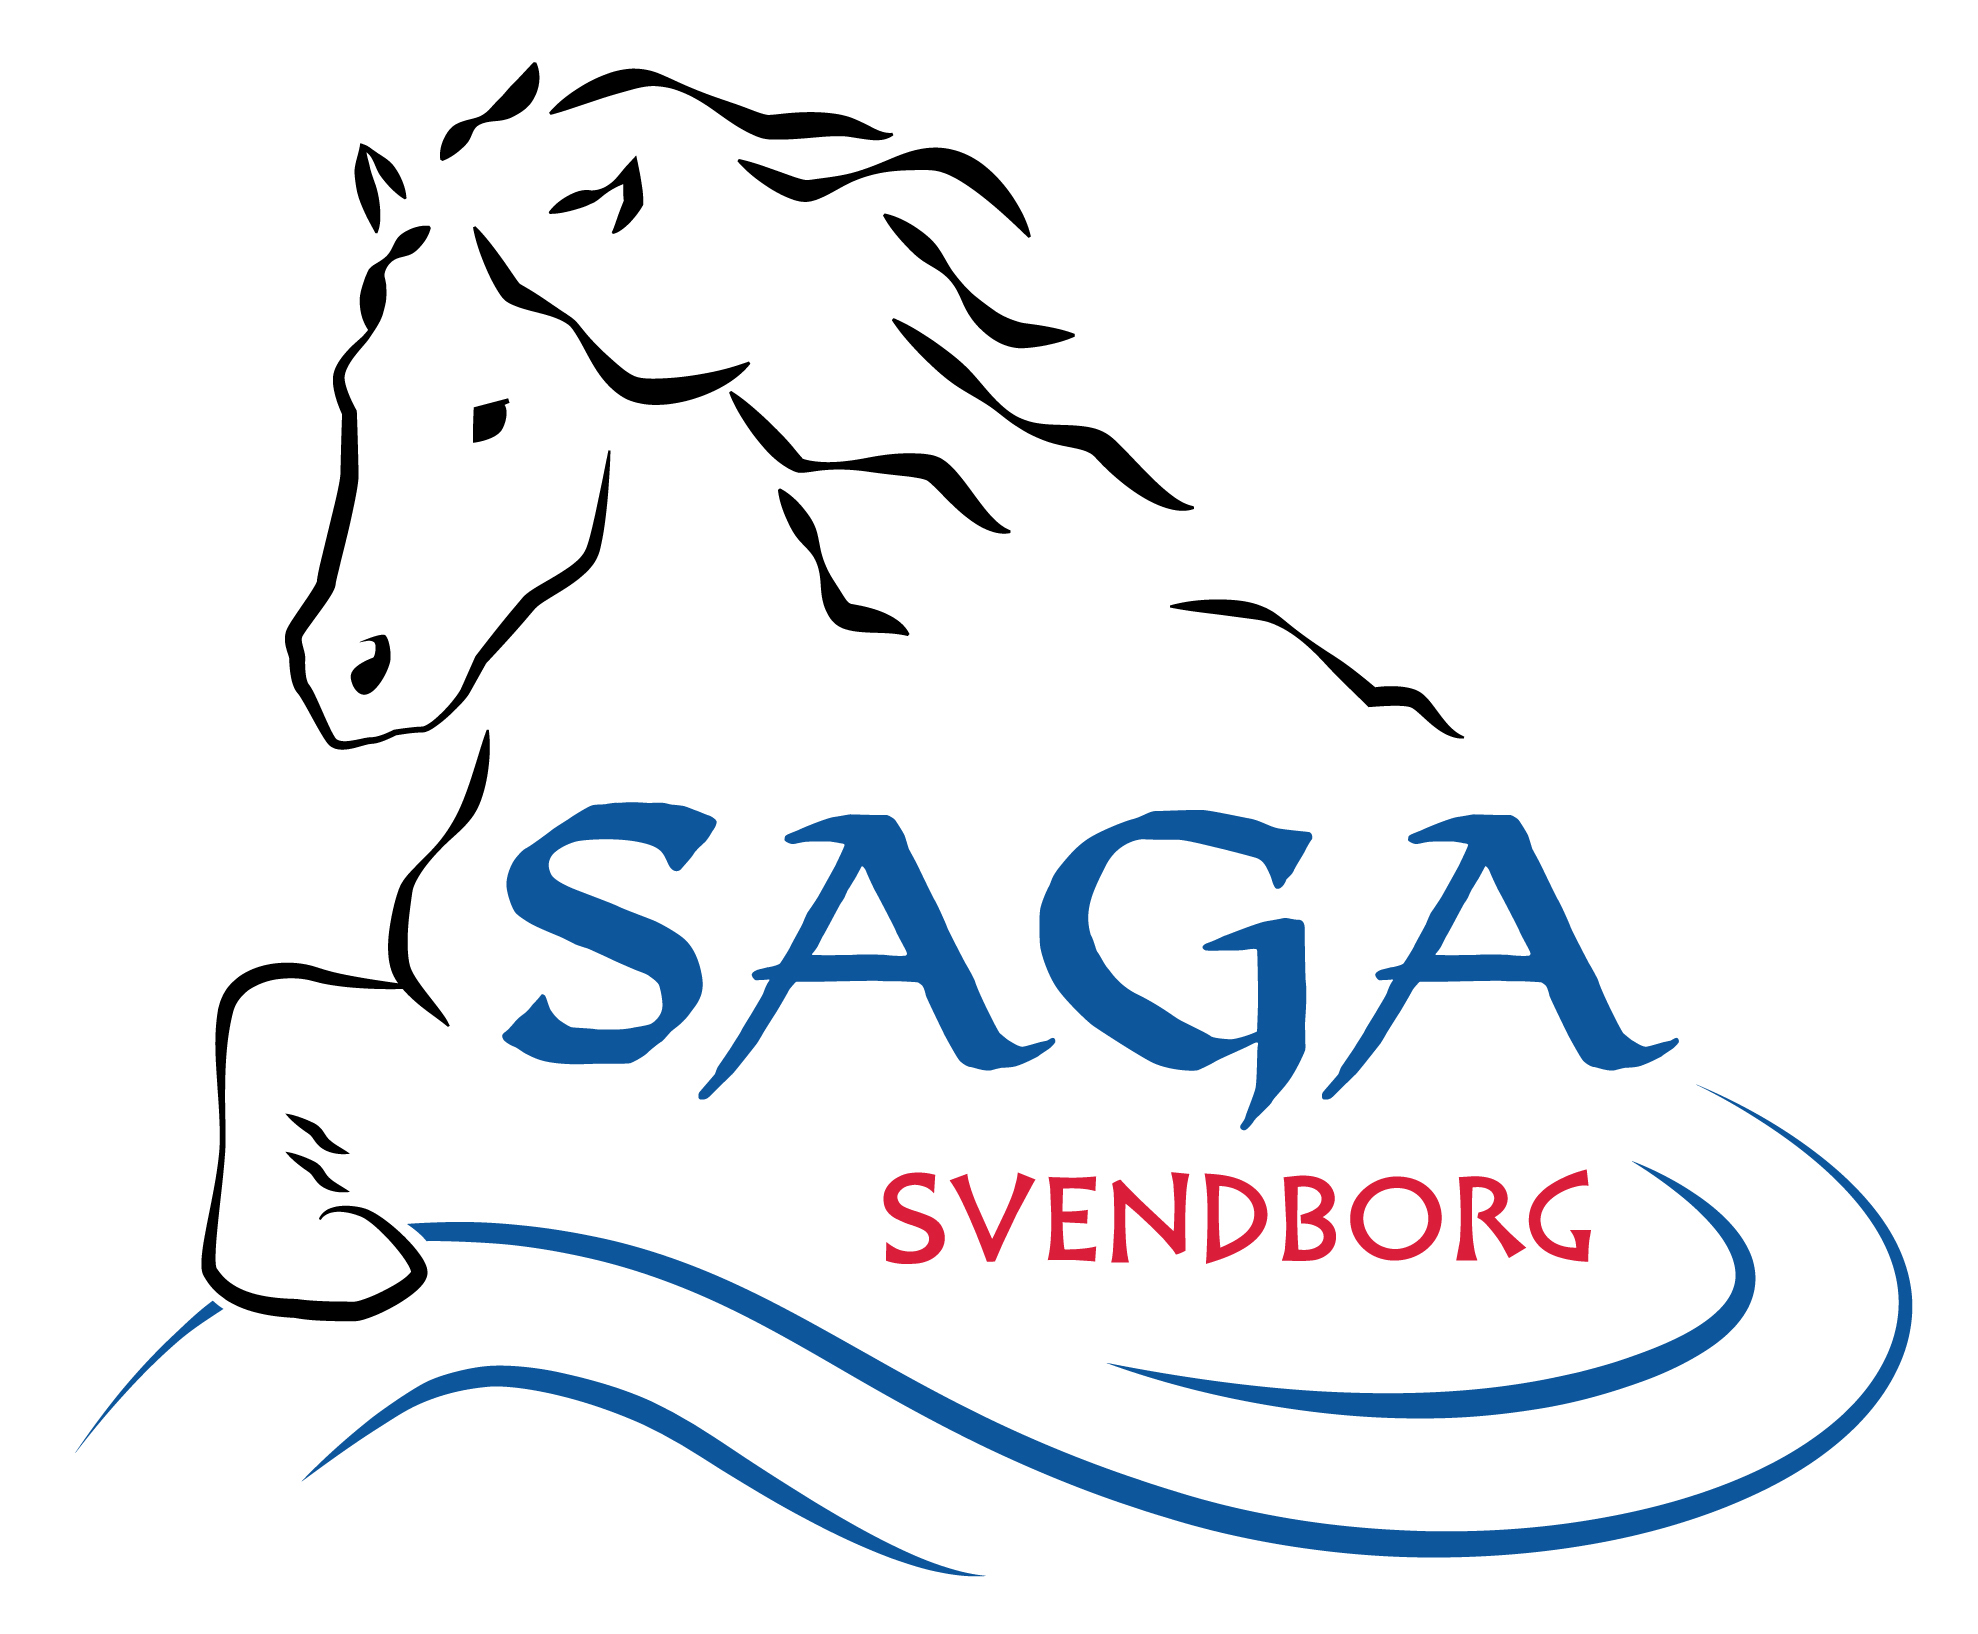 Saga Svendborg